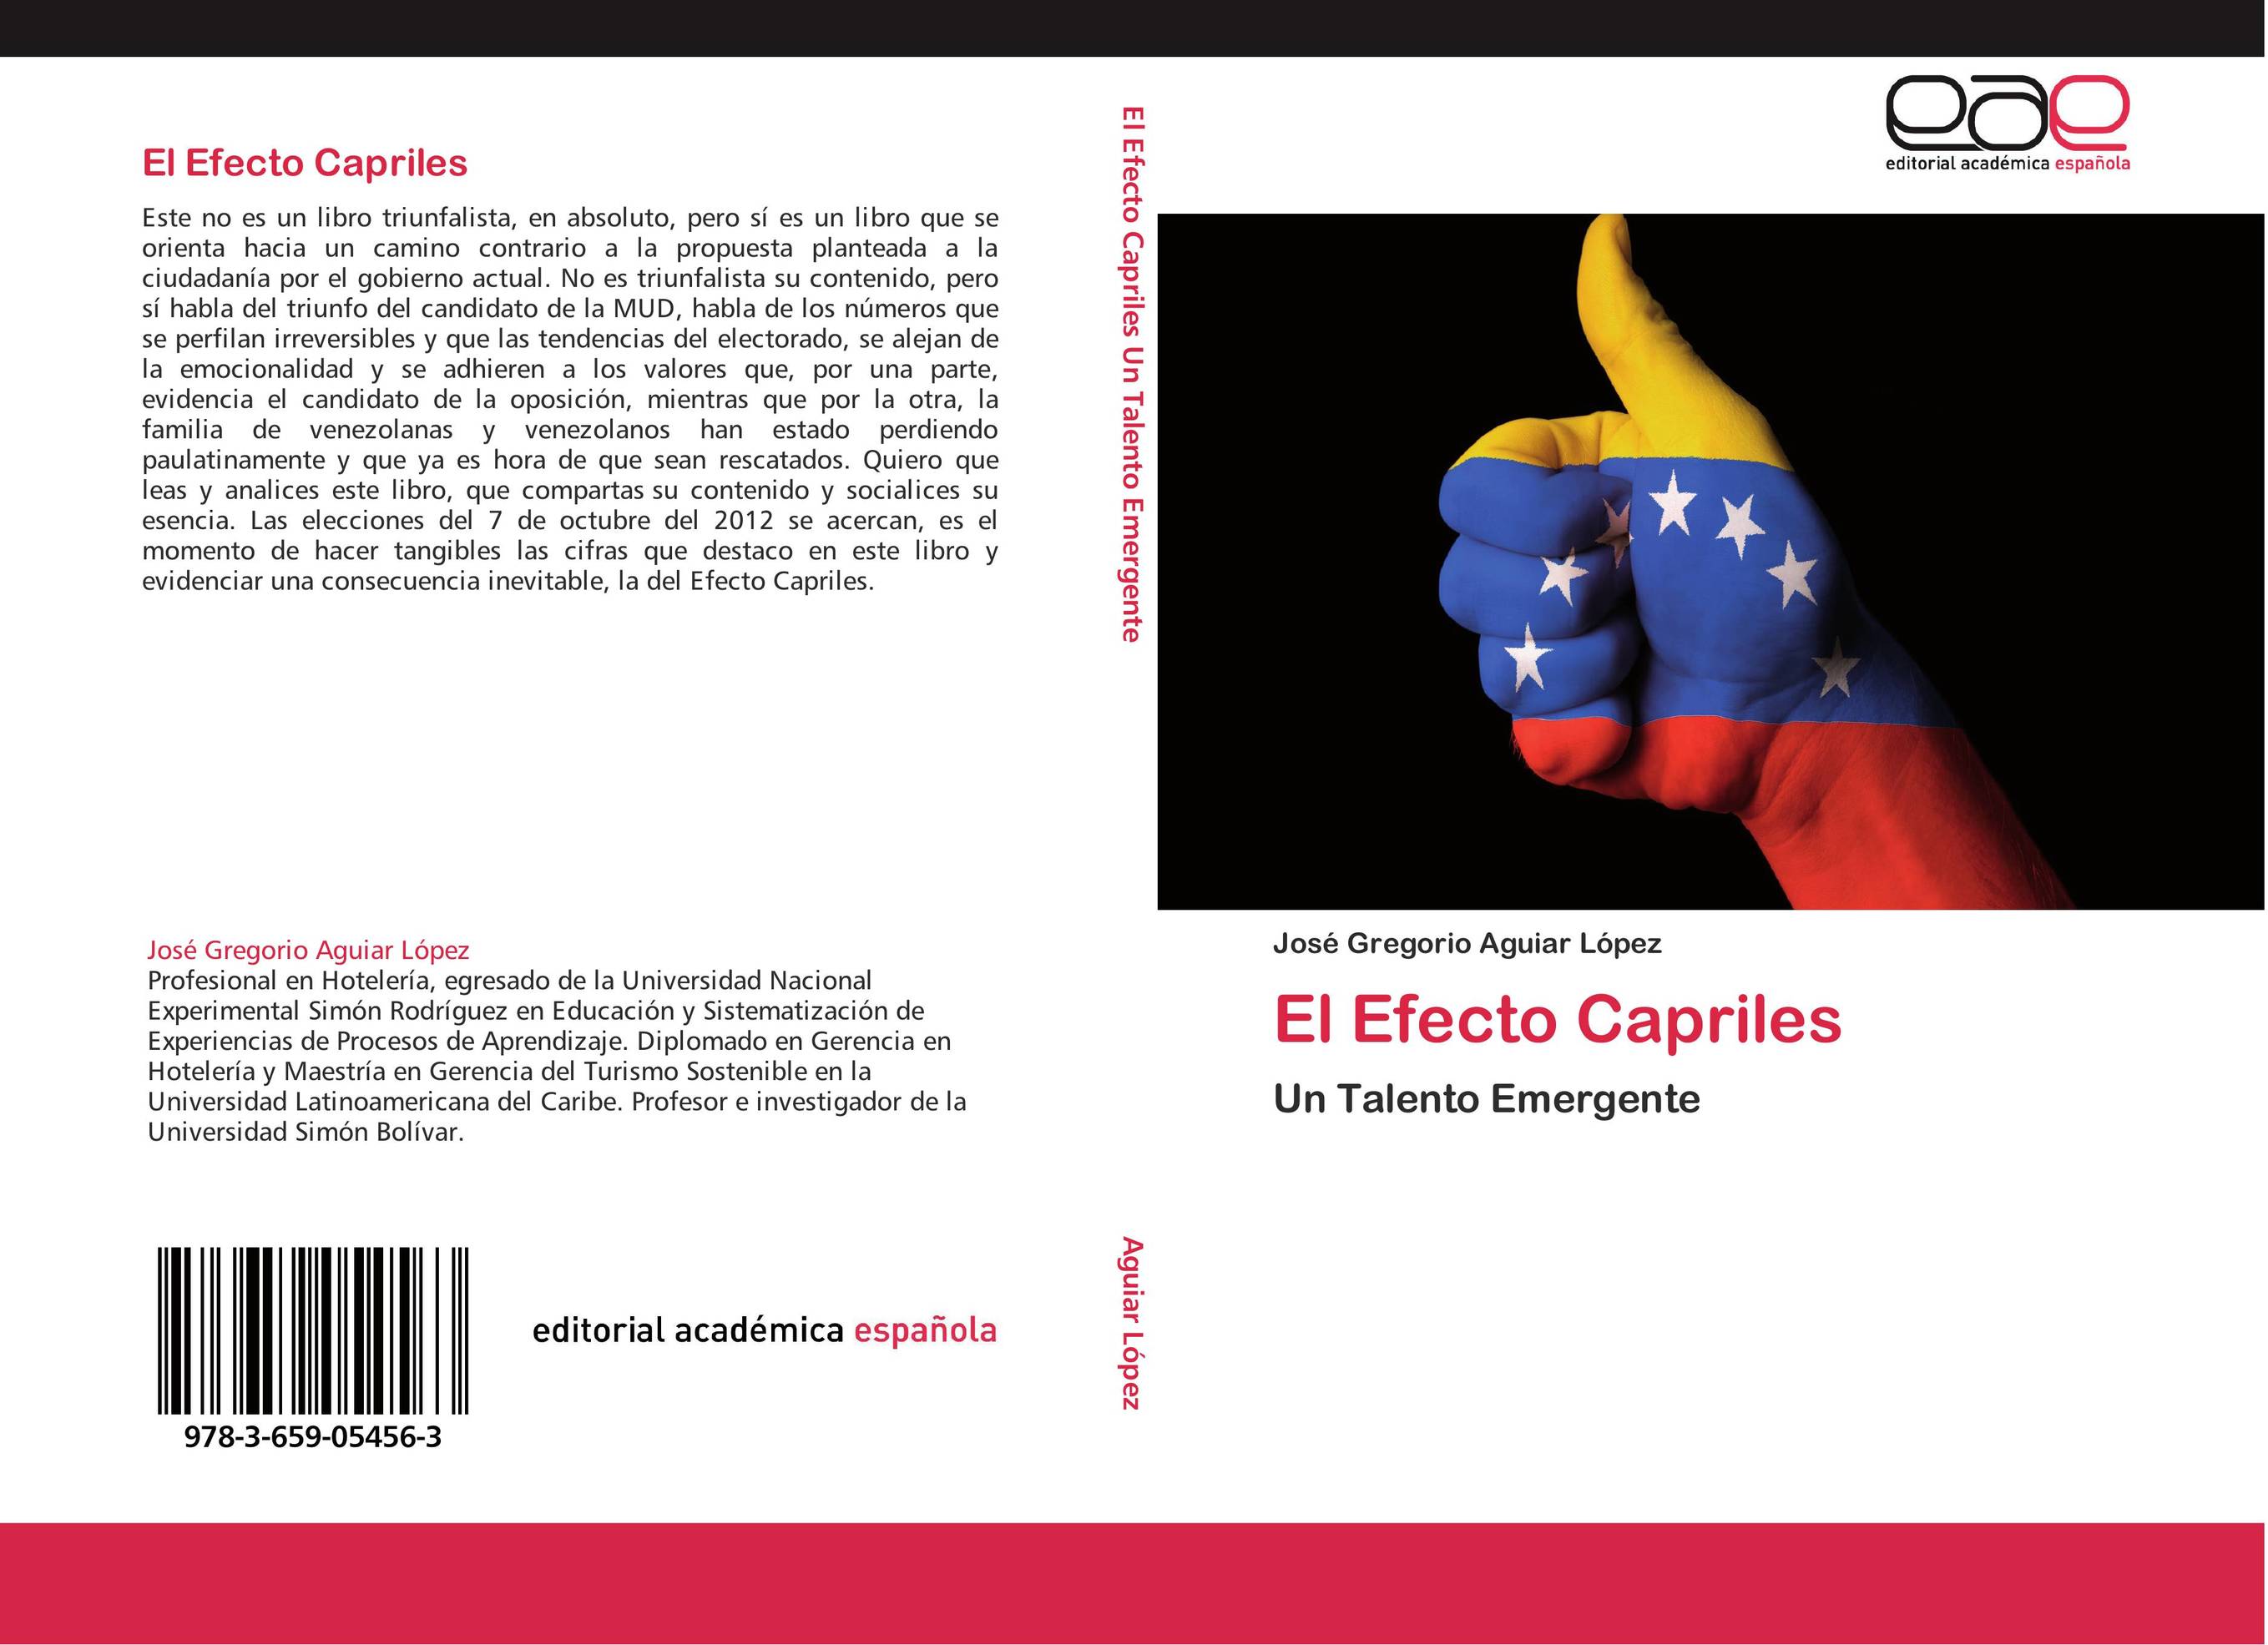 El Efecto Capriles